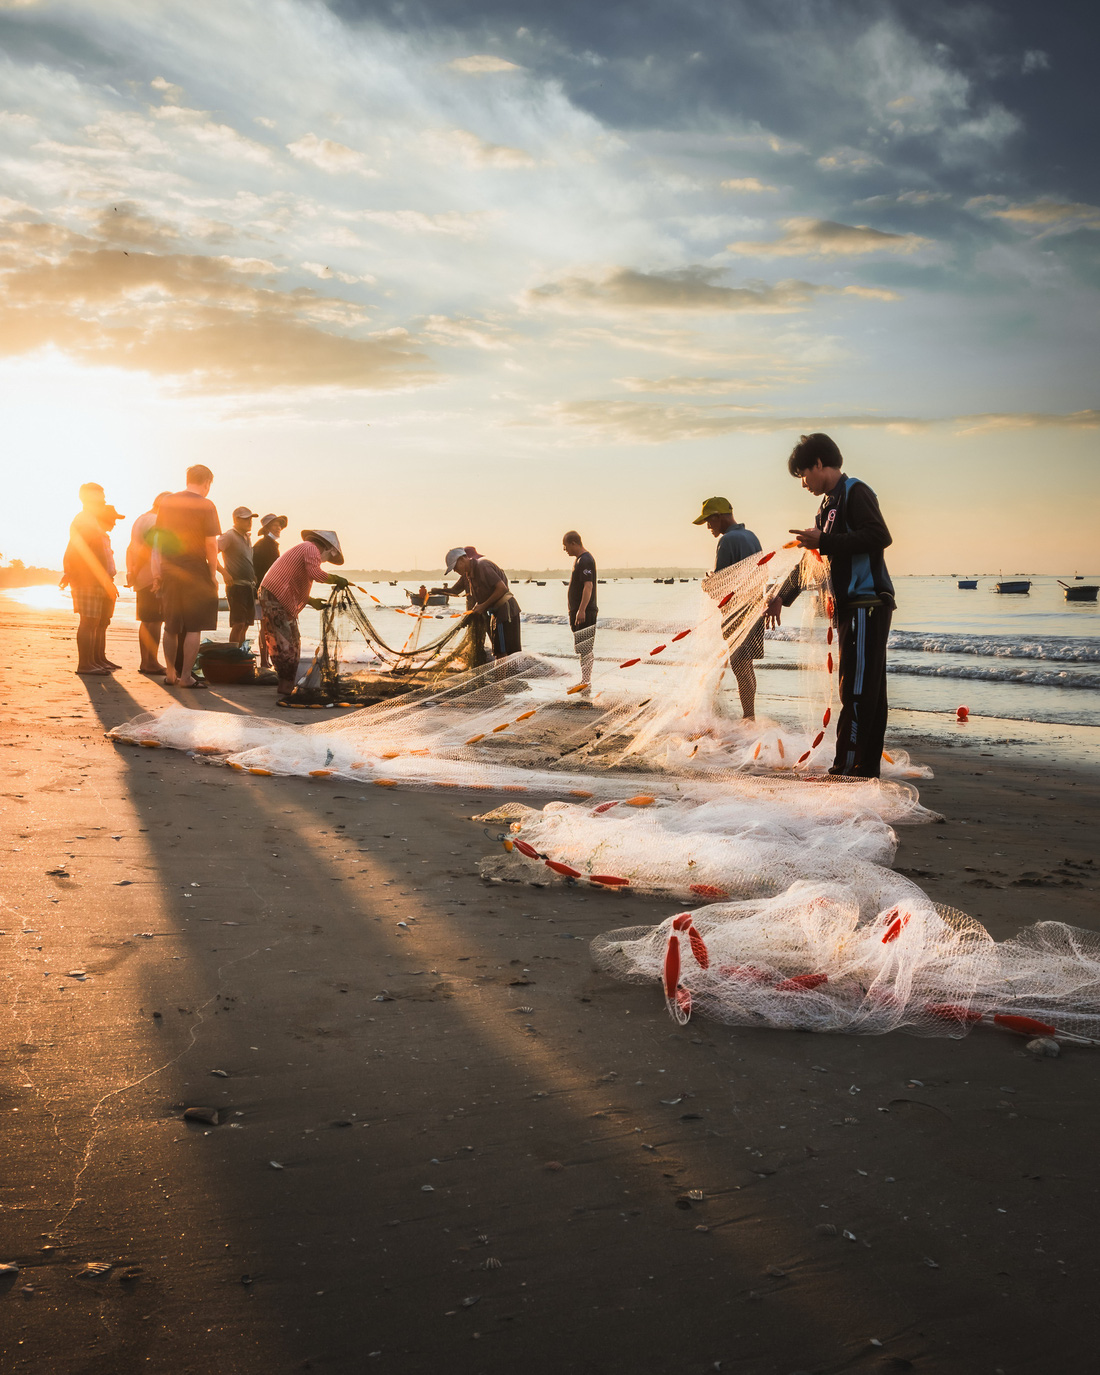 Người dân địa phương đang phân loại hải sản sau chuyến đánh cá vào sáng sớm tại một làng chài ở Mũi Né, tỉnh Bình Thuận - Ảnh: HARRY BRADLEY